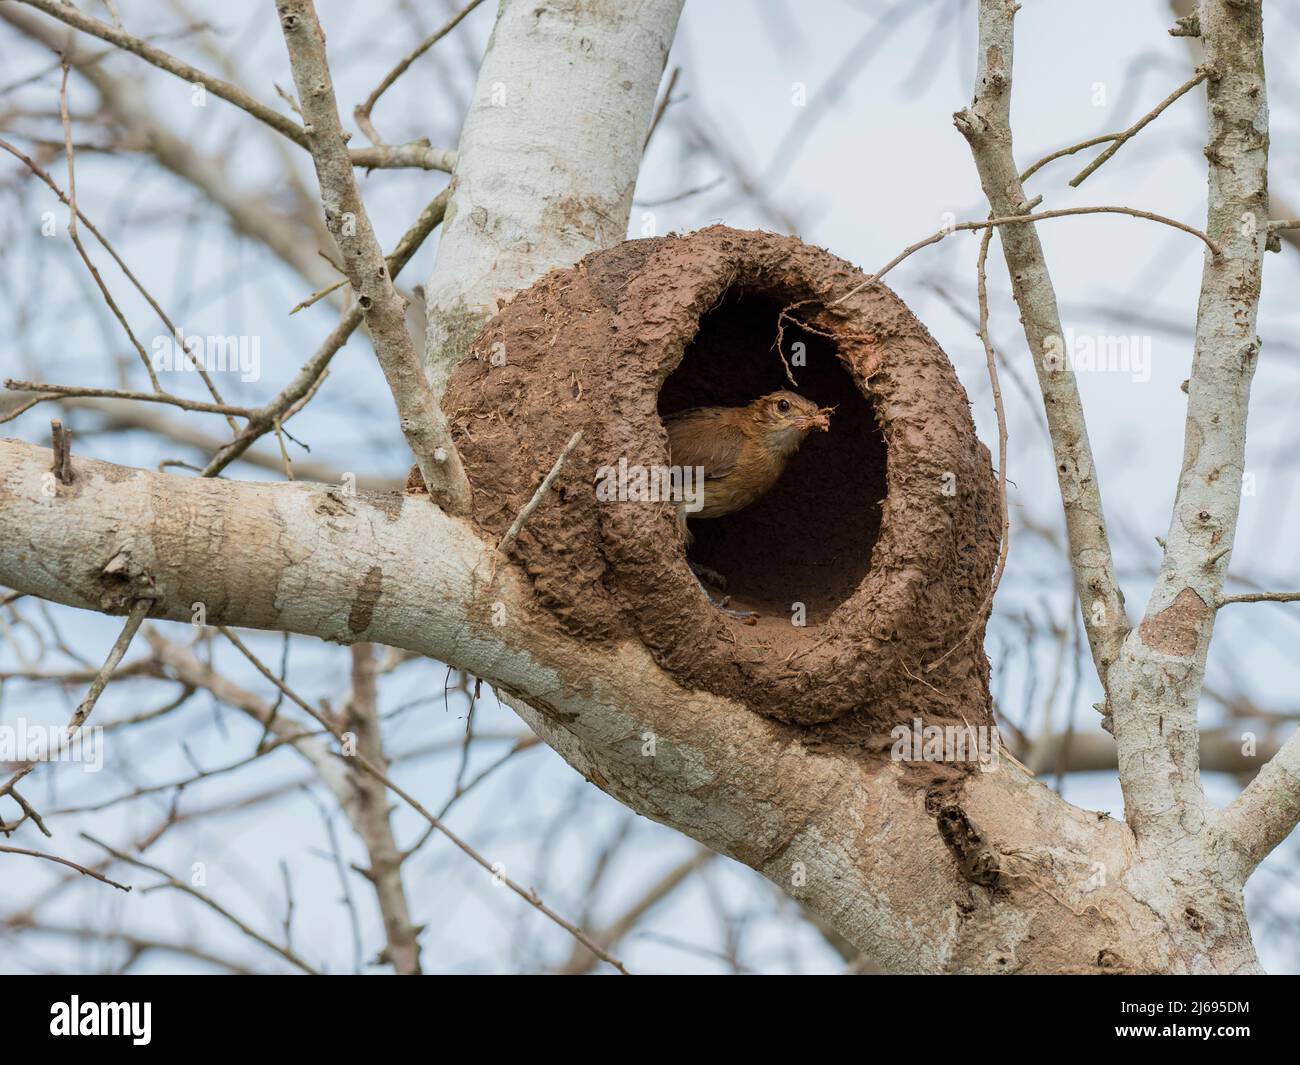 Ovenbird rosso adulto (Furnarius rufus), costruendo un nido in un albero, Rio Pixaim, Mata Grosso, Pantanal, Brasile, Sud America Foto Stock